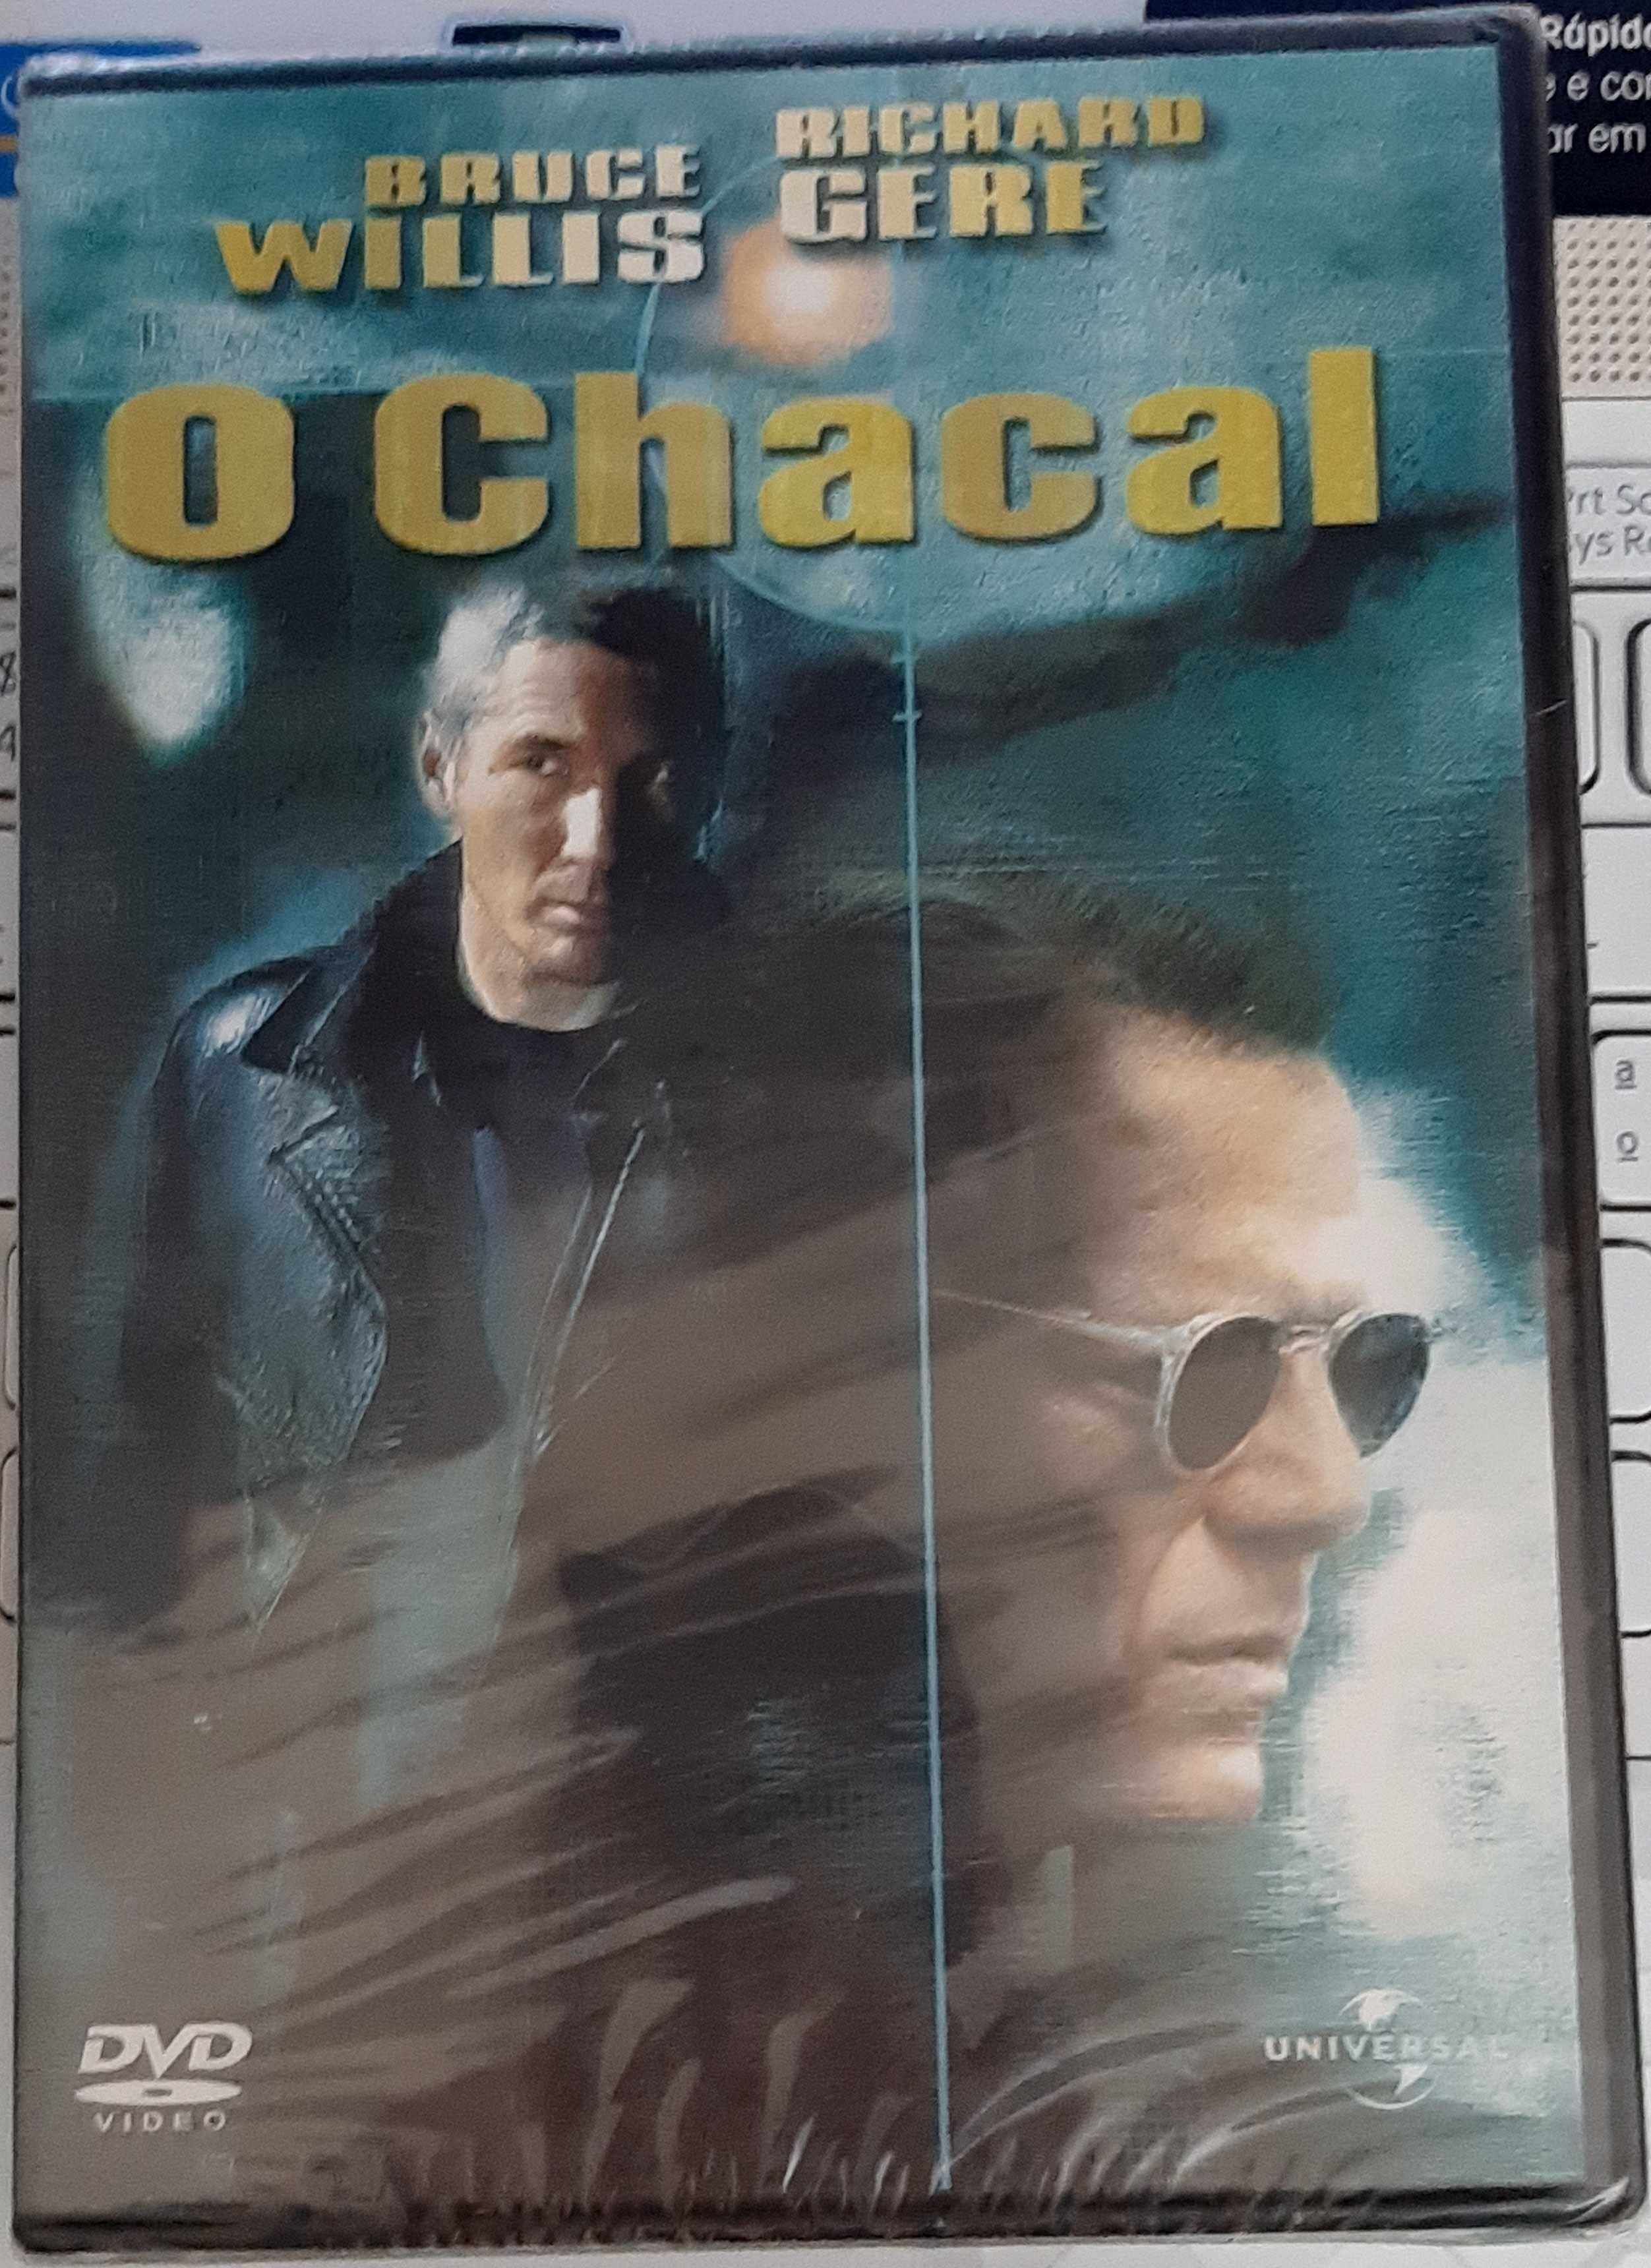 Filme em DVD: O Chacal "The Jackal" - NOVO! SELADO!